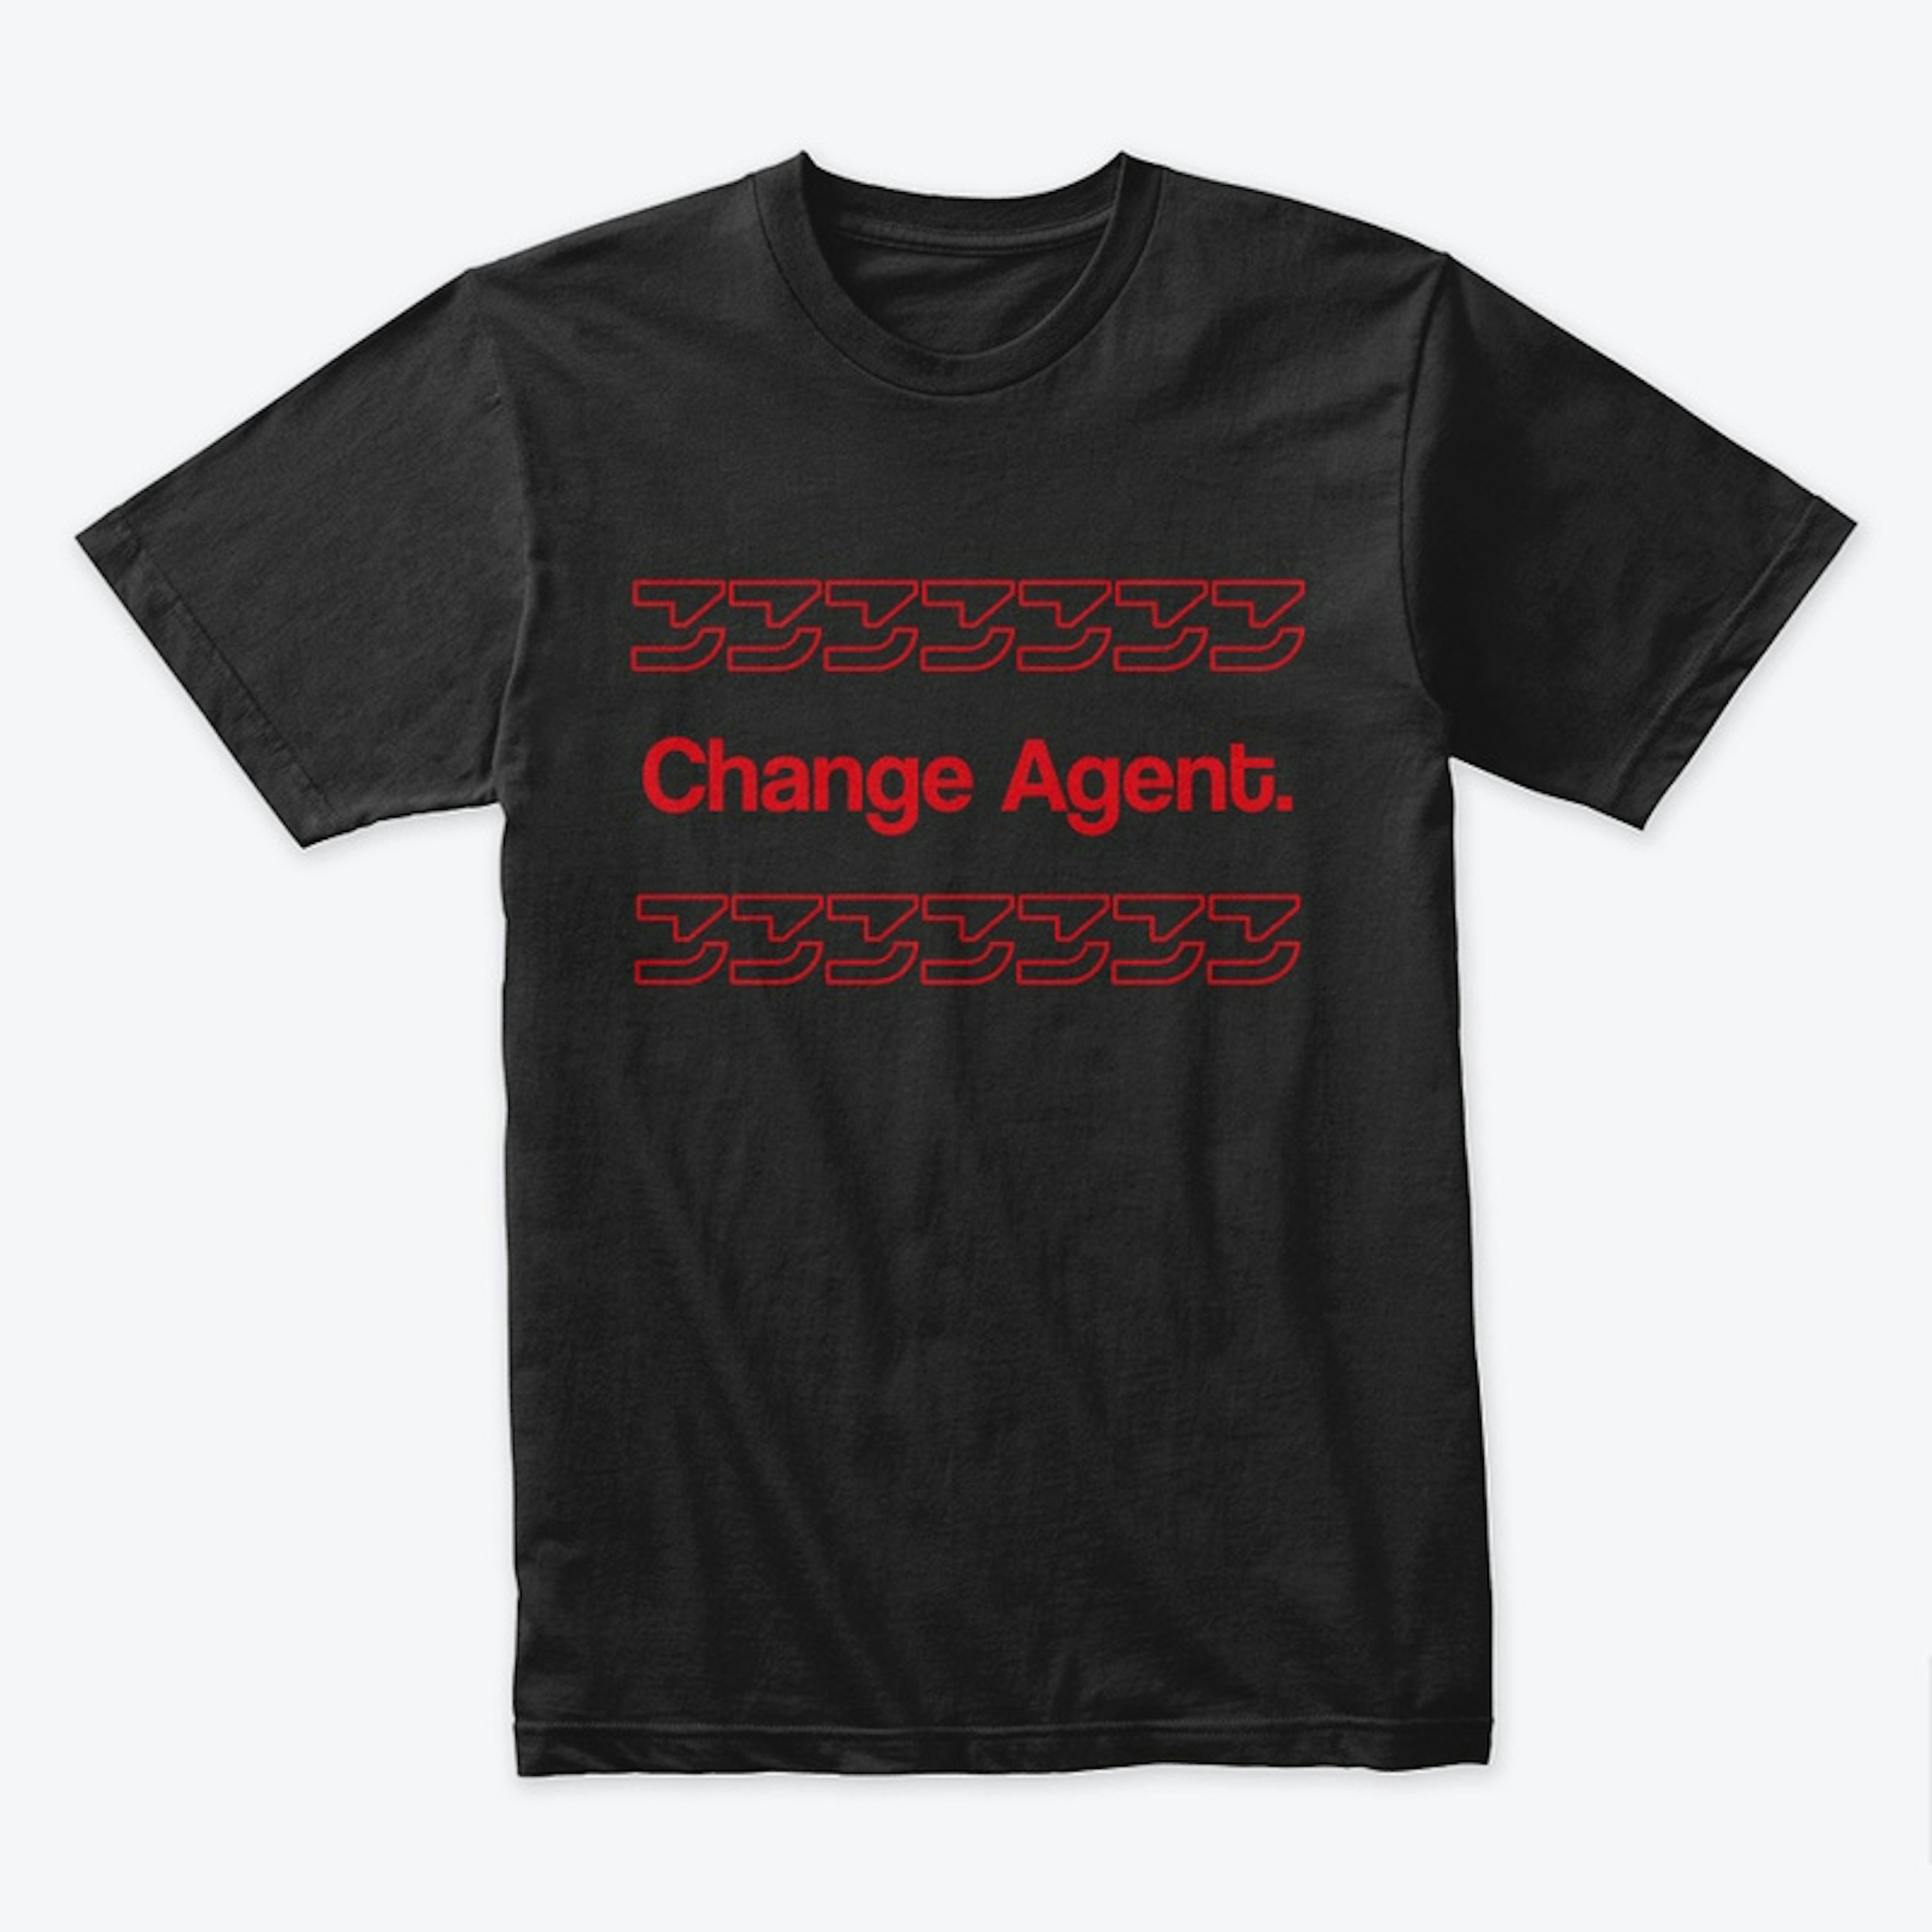 Change Agent.